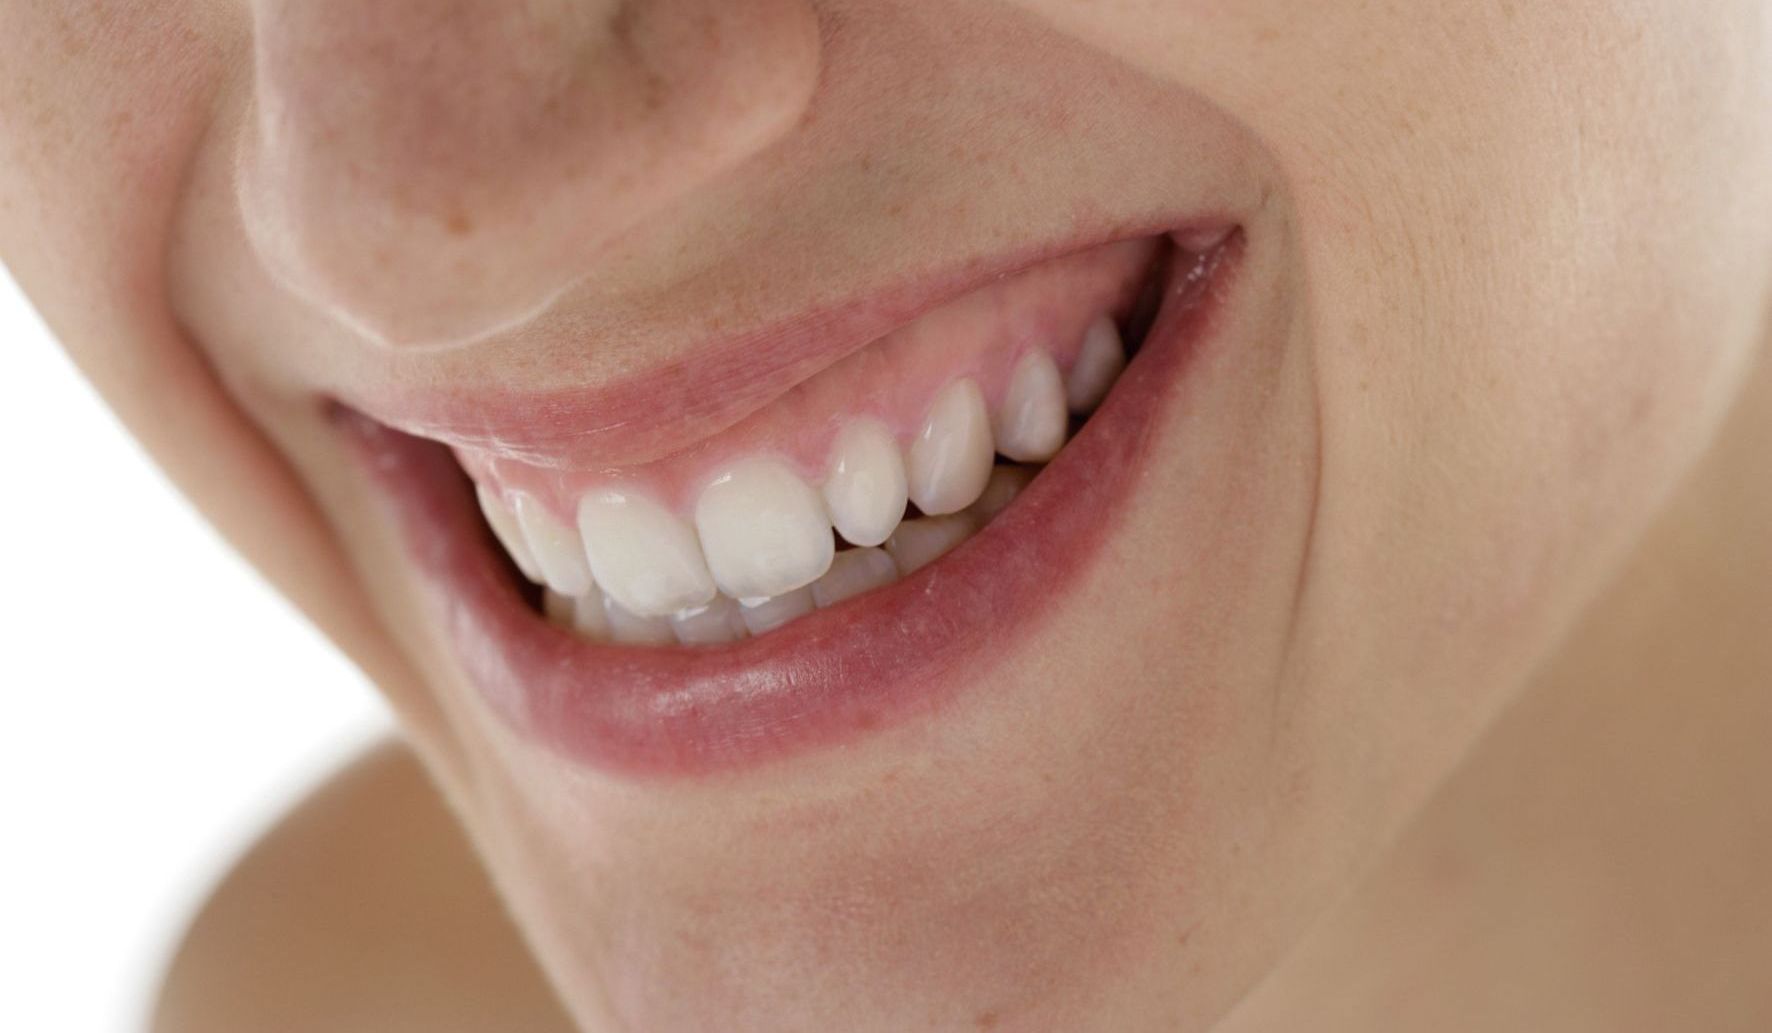 ... wünschen sie sich hellere Zähne ? Zähne können sich über die Jahre und den Einfluss von z.B. Zigaretten, Kaffee, Tee, Rotwein dunkel verfärben.Es besteht die Möglichkeit , Ihre Zähne mit geeigneten Mitteln wieder aufzuhellen. Vor jeder Bleichmaßnahme, sollte eine professionelle Zahnreinigung durchgeführt werden, um feste verfärbende Auflagerungen und Verfärbungen auf dem Zahn zu entfernen. Anschließend wird dann die Zahnsubstanz durch Bleaching aufgehellt. Home Bleaching Ist der Wunsch mehrere Zähne aufzuhellen, gelingt das am besten mit sogenannten Bleichschienen. Es werden Abdrücke der Kiefer angefertigt und anhand der Modelle eine dünne Schiene gefertigt, die als Träger für das Bleichmaterial dient. Die Schienen werden von Ihnen Zuhause mit einem speziellen Bleichgel befüllt und für einen bestimmten Zeitraum getragen (Home Bleaching). Wir werden Ihnen das Vorgehen genau demonstrieren. Es ist eine schonende Methode, die später jederzeit mit den vorhandenen Schienen wiederholbar ist. In-Office-Bleaching in der Praxis Das sogenannte In-Office-Bleaching erfolgt in der Praxis in nur einer Sitzung. Dabei wird ein spezielles Bleaching-Gel mehrfach bei uns in der Praxis auf die Zähne aufgetragen. Da die Konzentration des Gels höher ist, muß die Mundschleimhaut sorgfältig geschützt werden. Außerdem können leichte Überempfindlichkeiten entstehen, die aber in den meisten Fällen schnell wieder zurückgehen. Diese Verfahren kommt beim Aufhellen von kleinen gezielten Zahnpartien zum Einsatz. Eine besonderer Fall liegt vor, wenn Zähne aufgrund einer Wurzelkanalbehandlung dunkel verfärbt sind. Zum Bleichen wird hier ein Bleichmittel von Innen in den Zahn eingebracht.